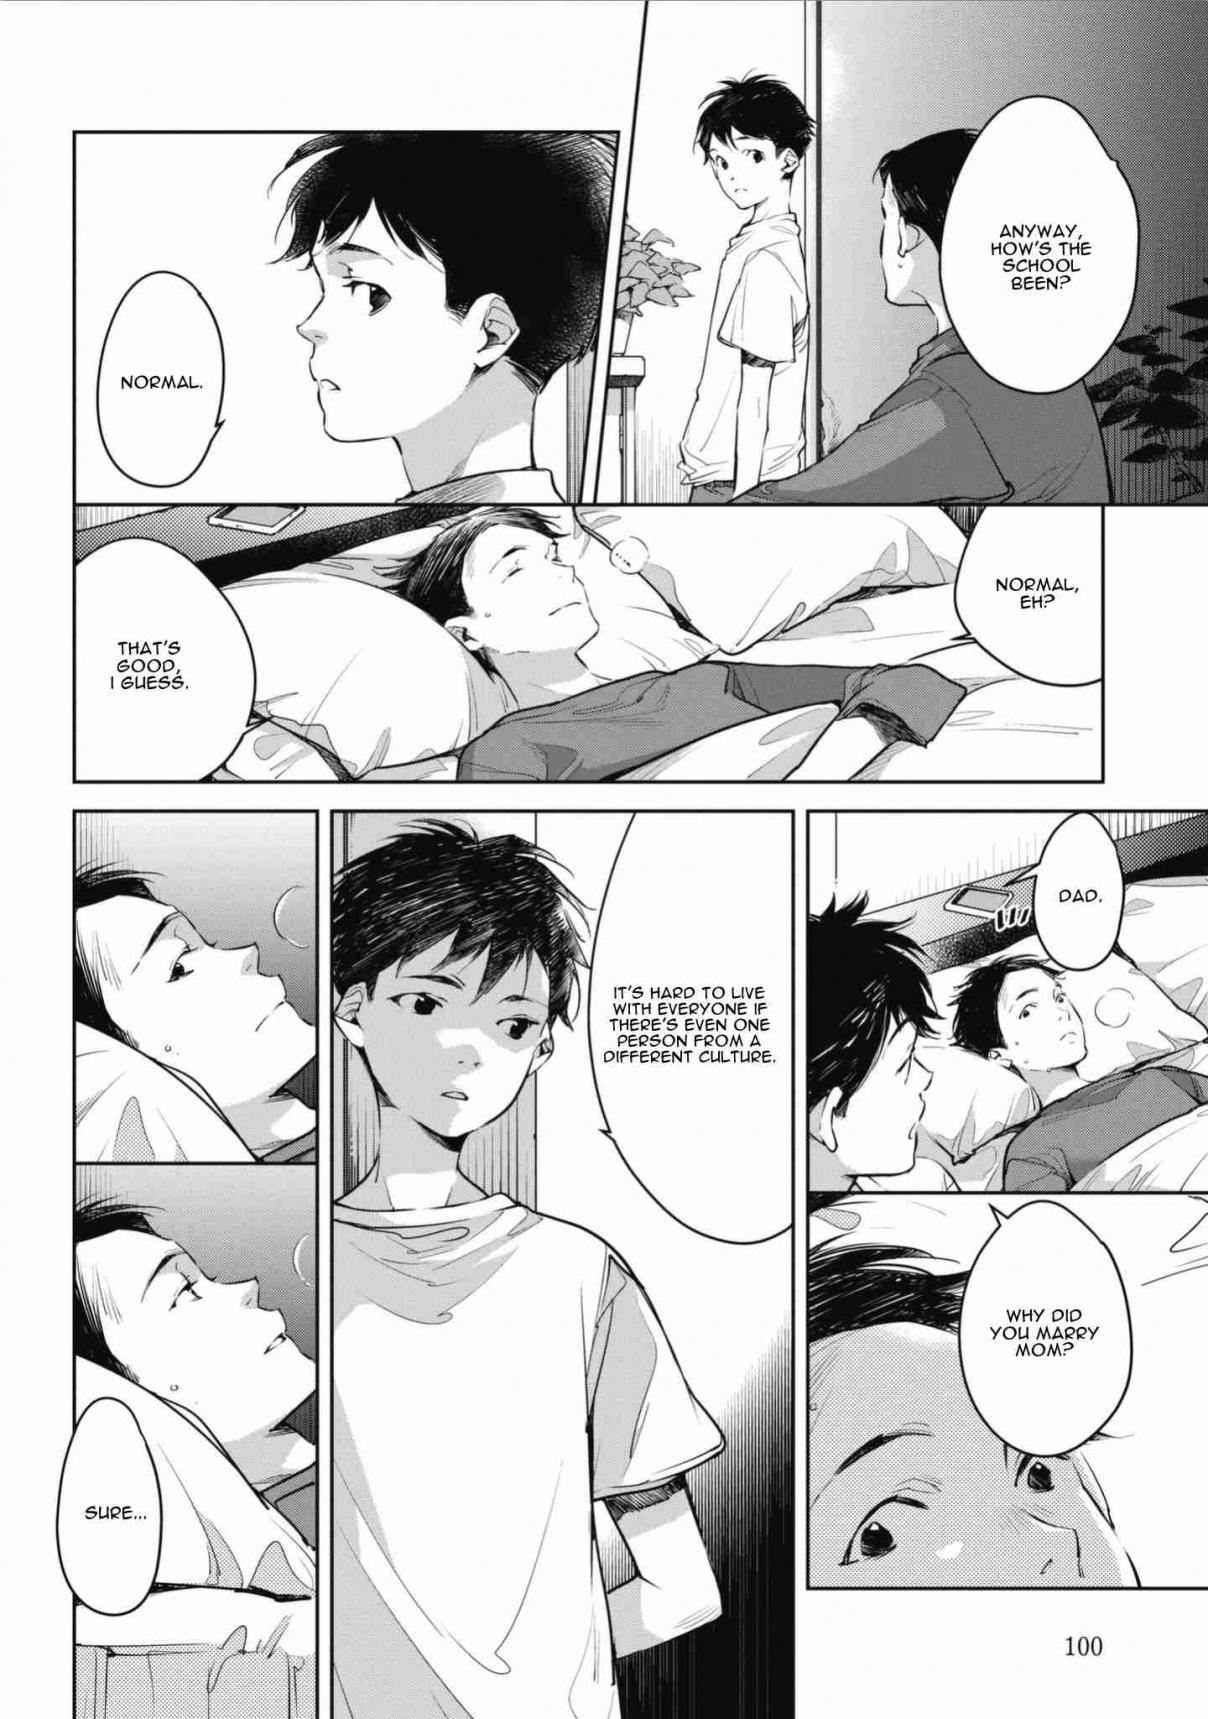 Okashiratsuki Vol. 1 Ch. 4 Donna Kao? "What kind of a Face?"